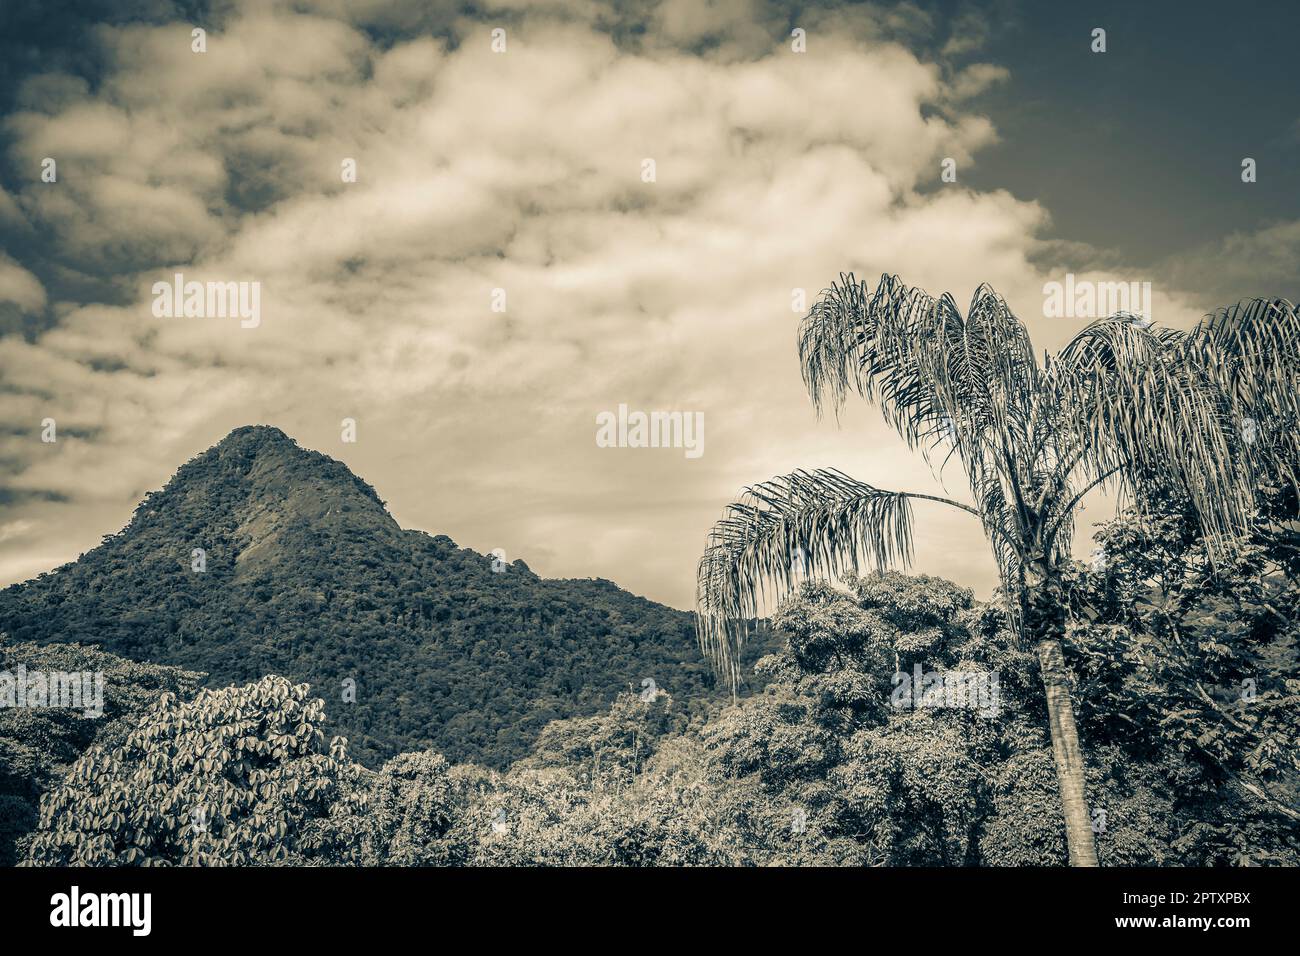 Altes Schwarz-Weiß-Bild des Abraao-Berges Pico do Papagaio mit Wolken auf Ilha Grande Angra dos Reis Rio de Janeiro Brasilien. Stockfoto